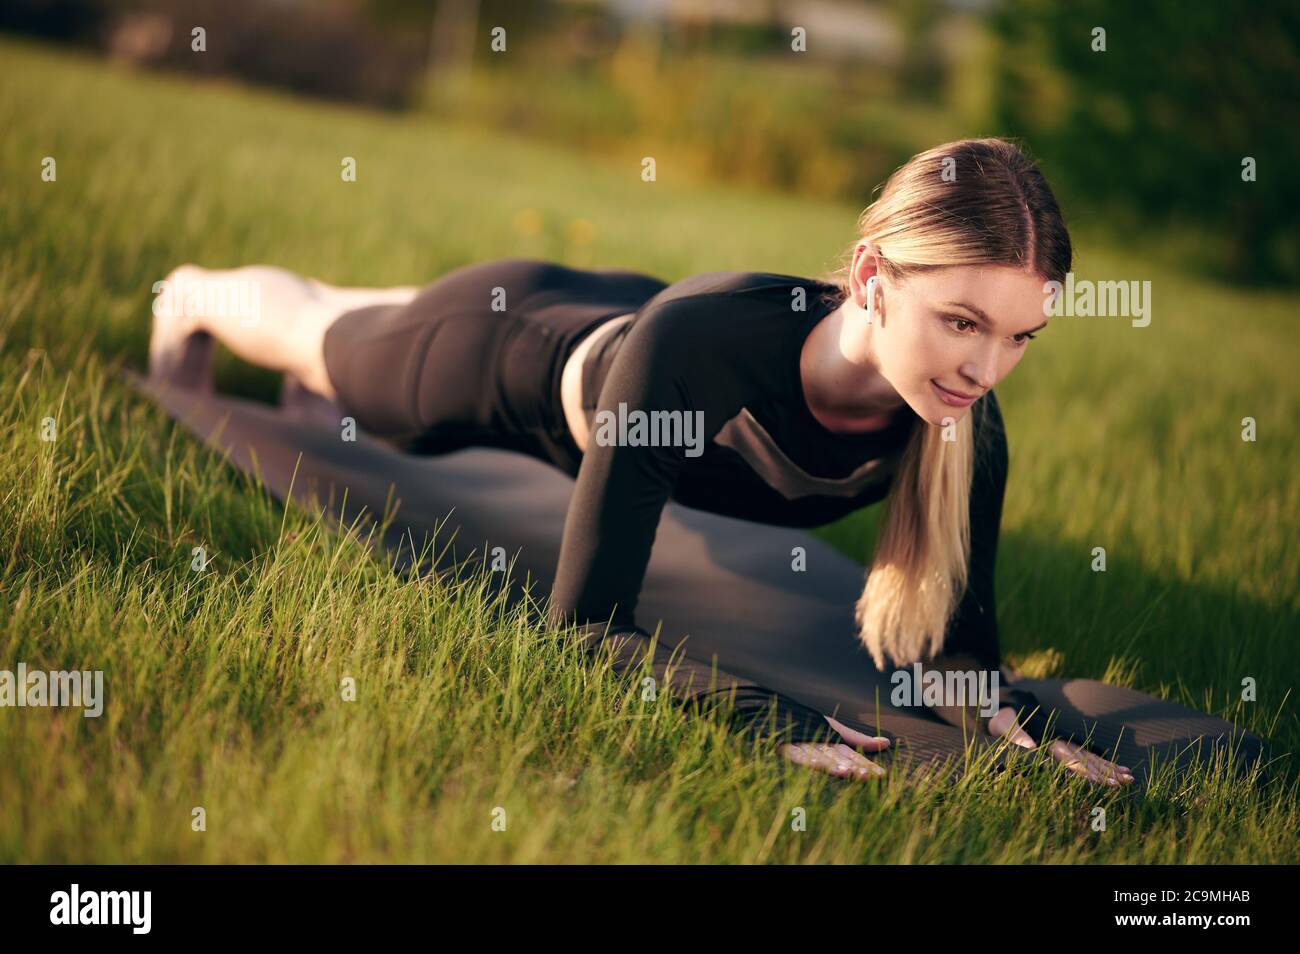 Athletische und starke Frau, die bei Sonnenuntergang in Plankenstellung im Freien steht. Konzept von Sport, Erholung und Motivation. Stockfoto